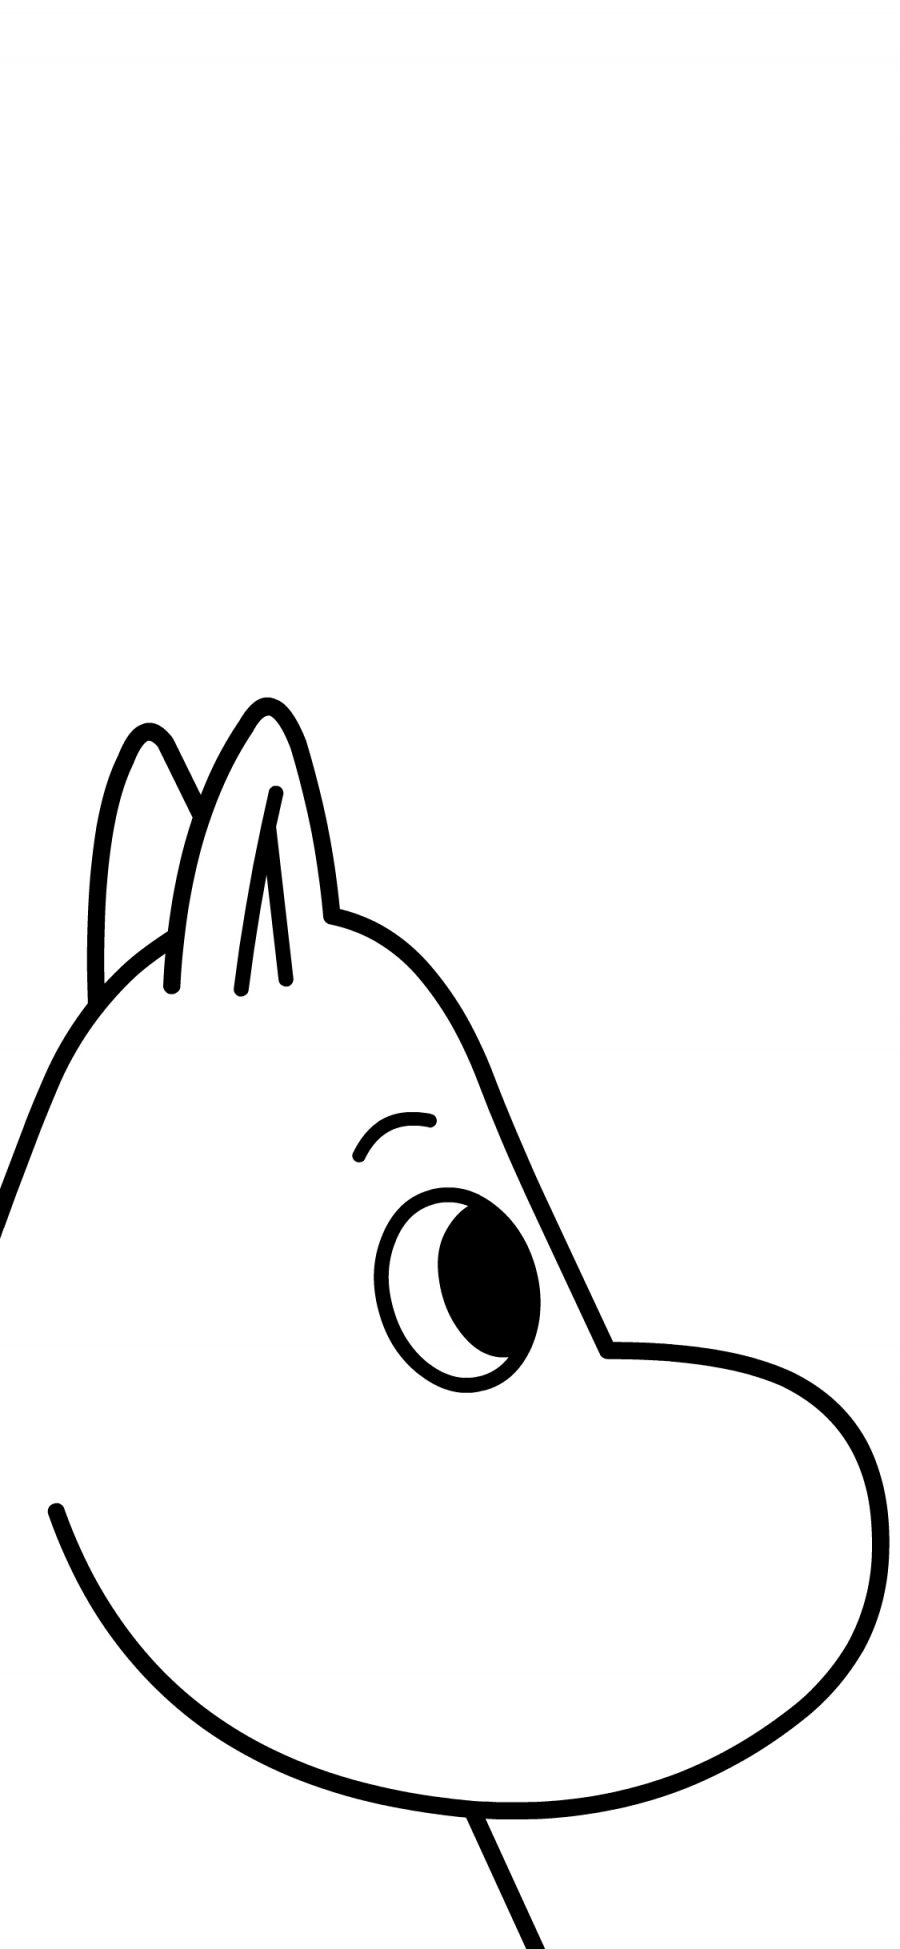 [2436×1125]姆明 黑白 卡通 精灵 可爱 Moomin 苹果手机动漫壁纸图片